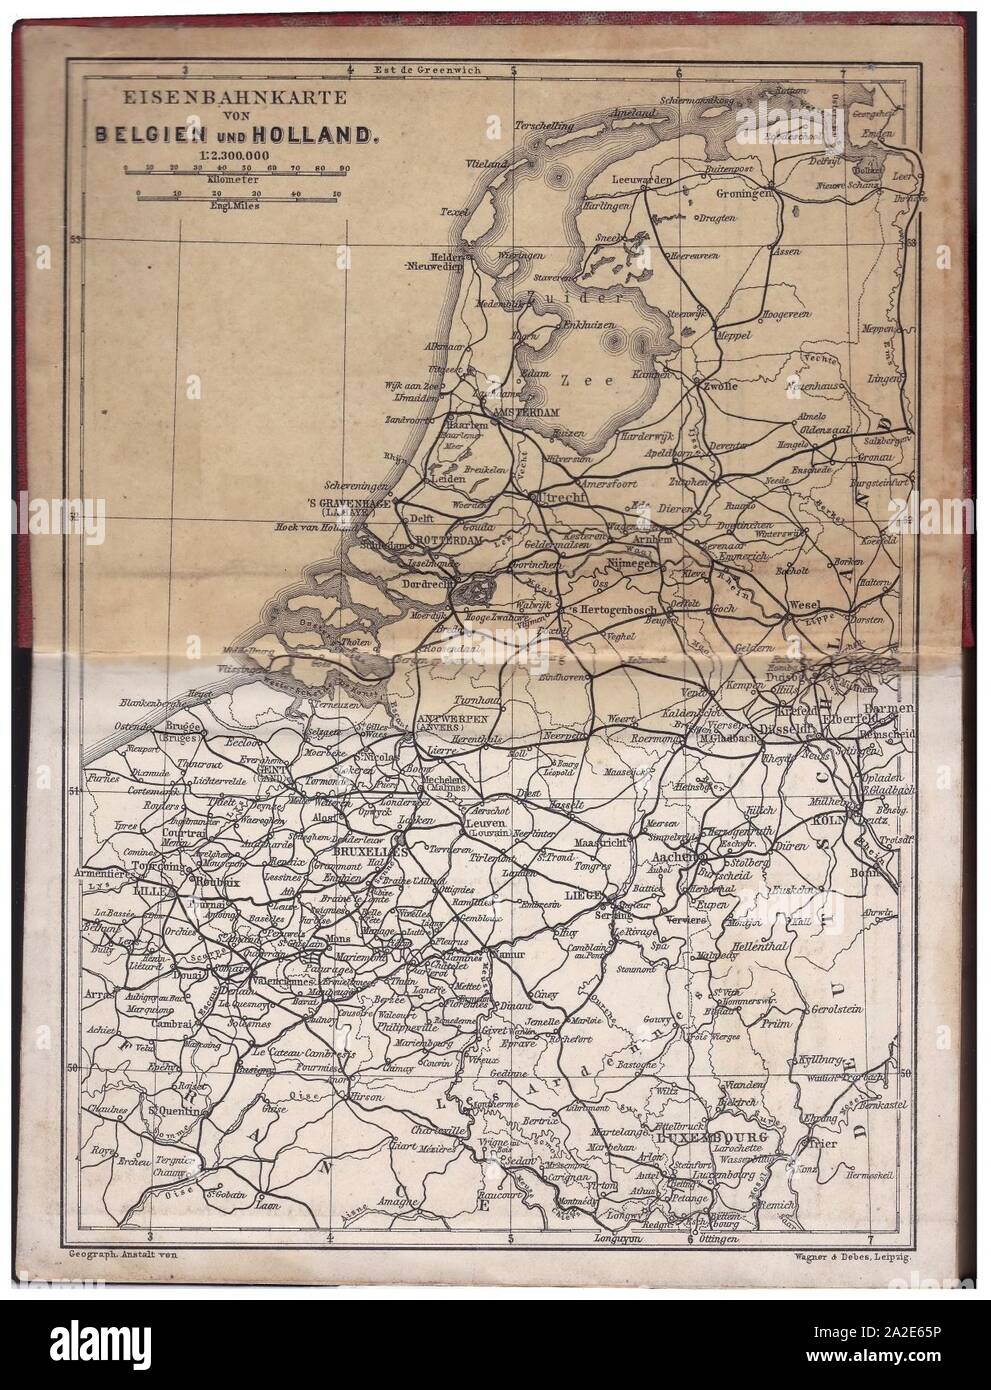 Eisenbahnkarte von Belgien und den Niederlanden (carte ferrovaire BENELUX 1897). Stock Photo